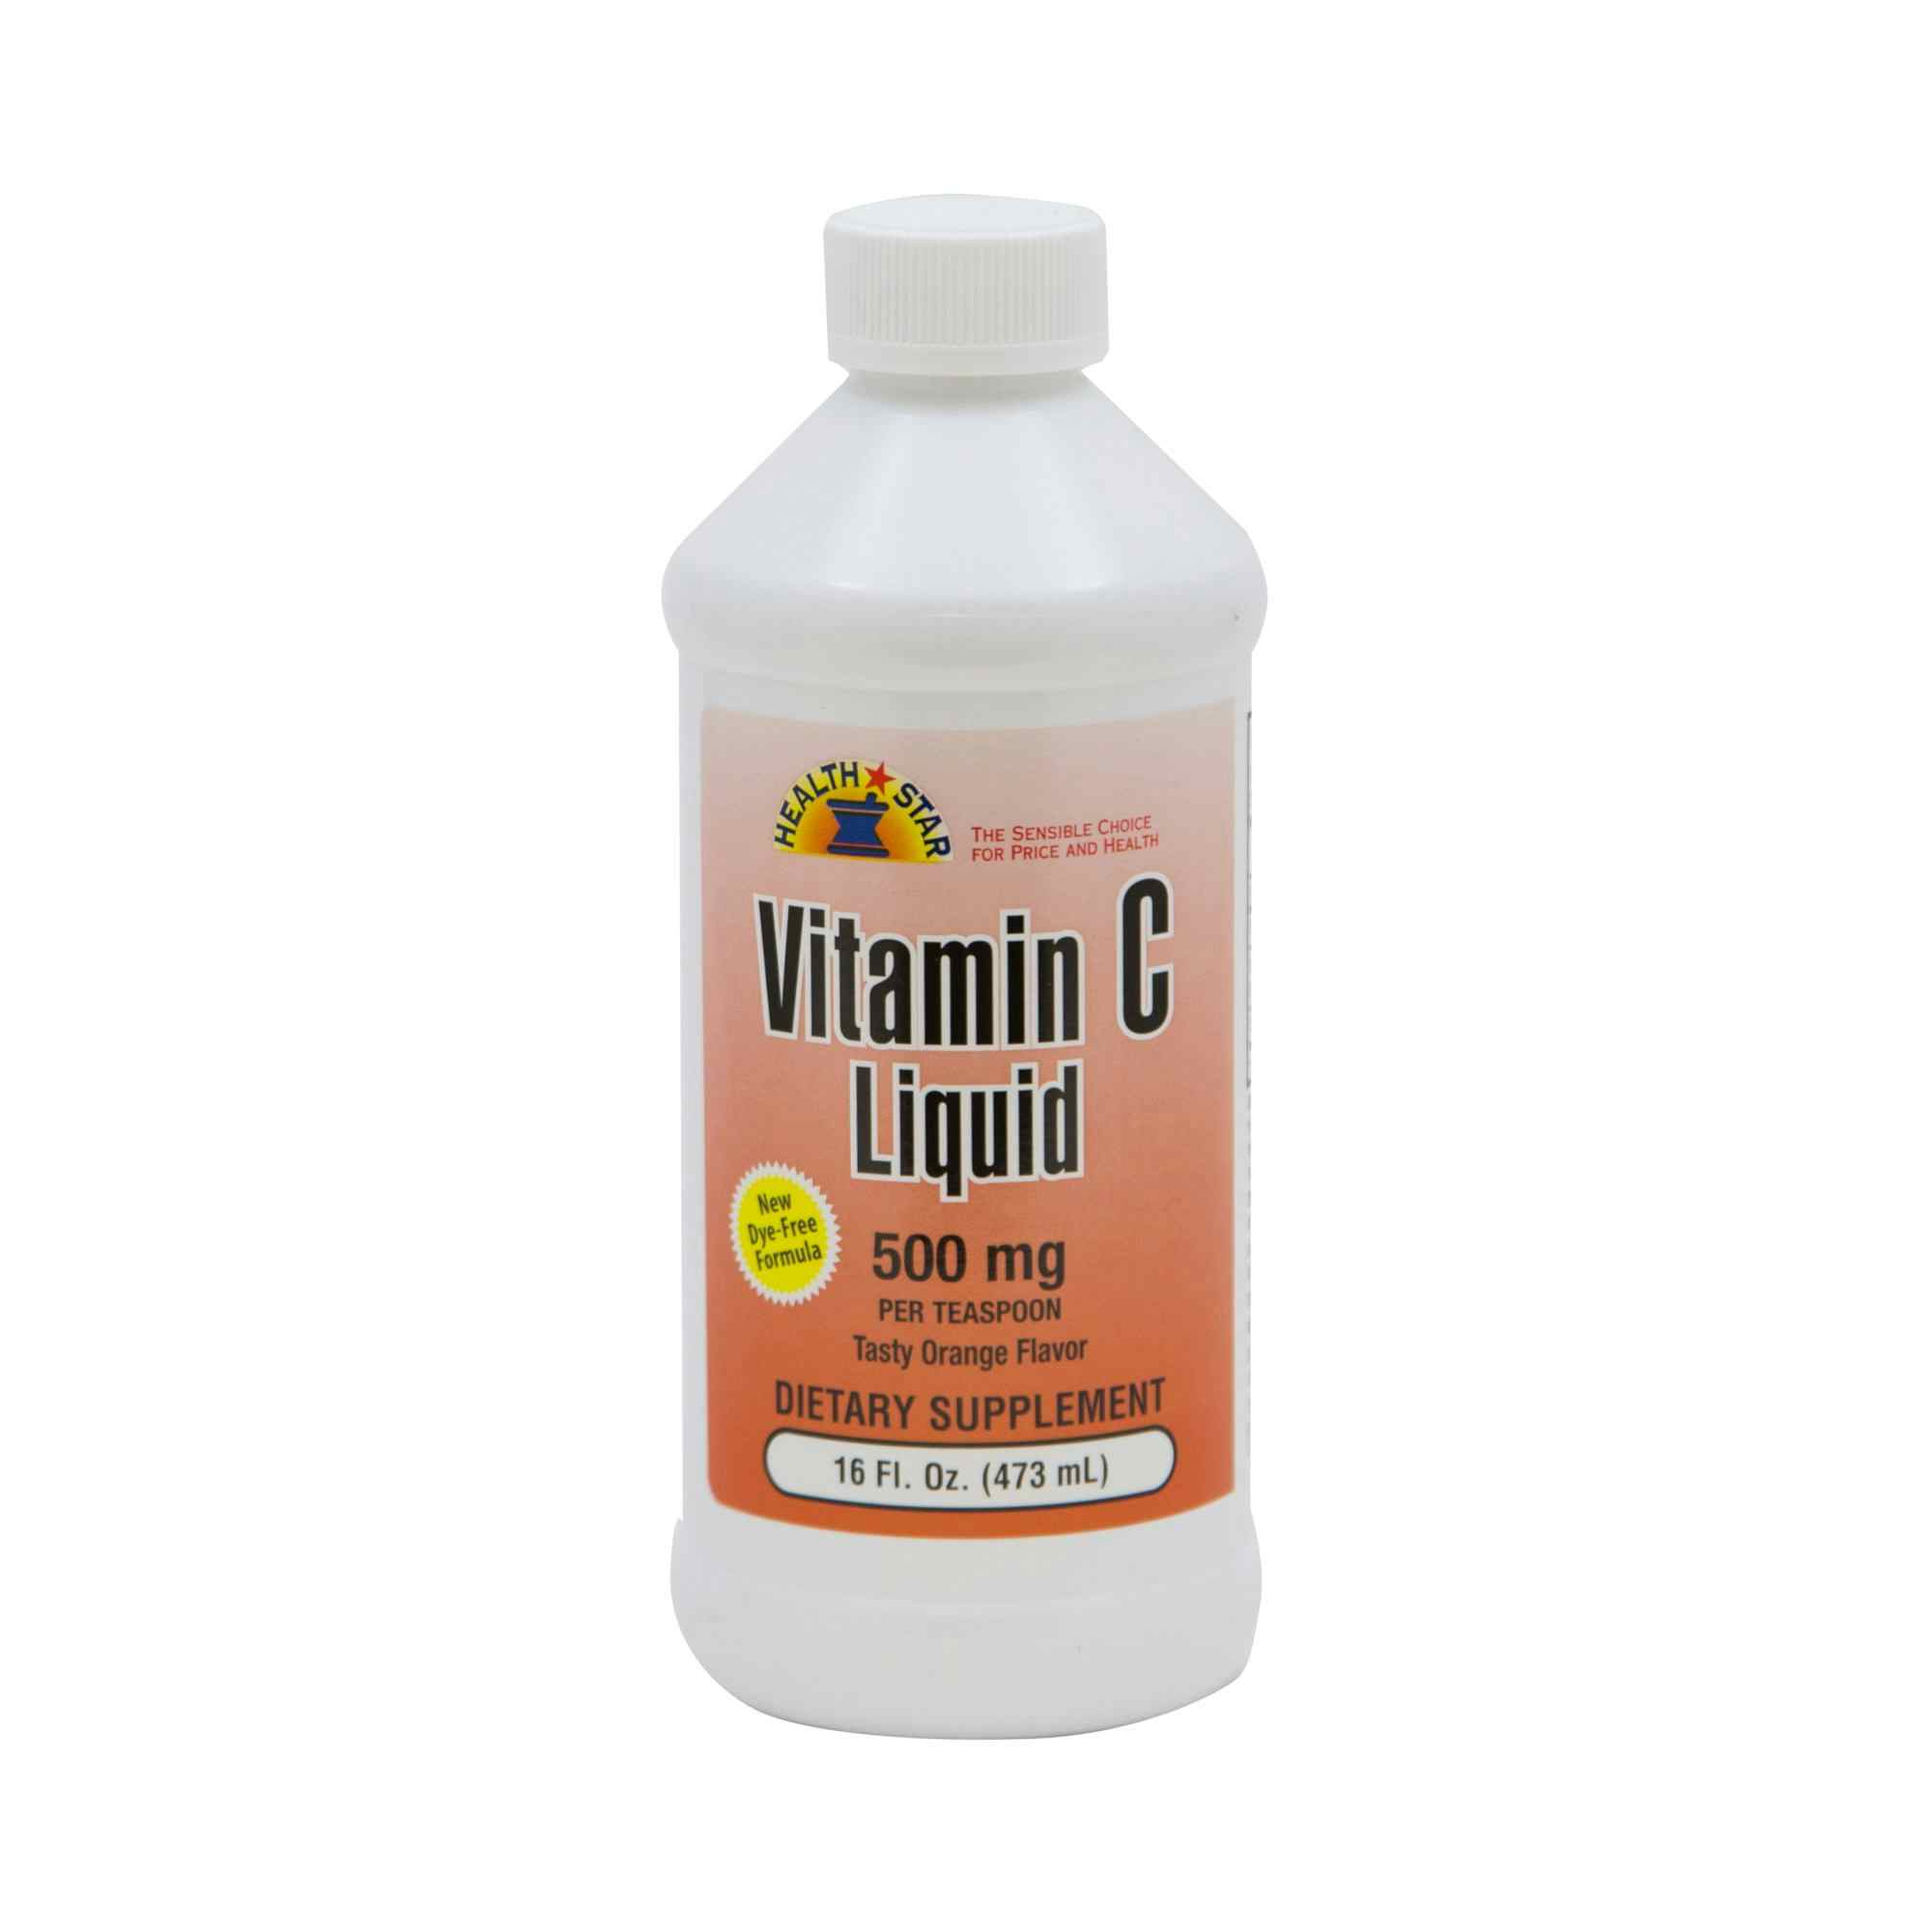 Geri-Care Ascorbic Acid Vitamin C Supplement 500 mg, Liquid